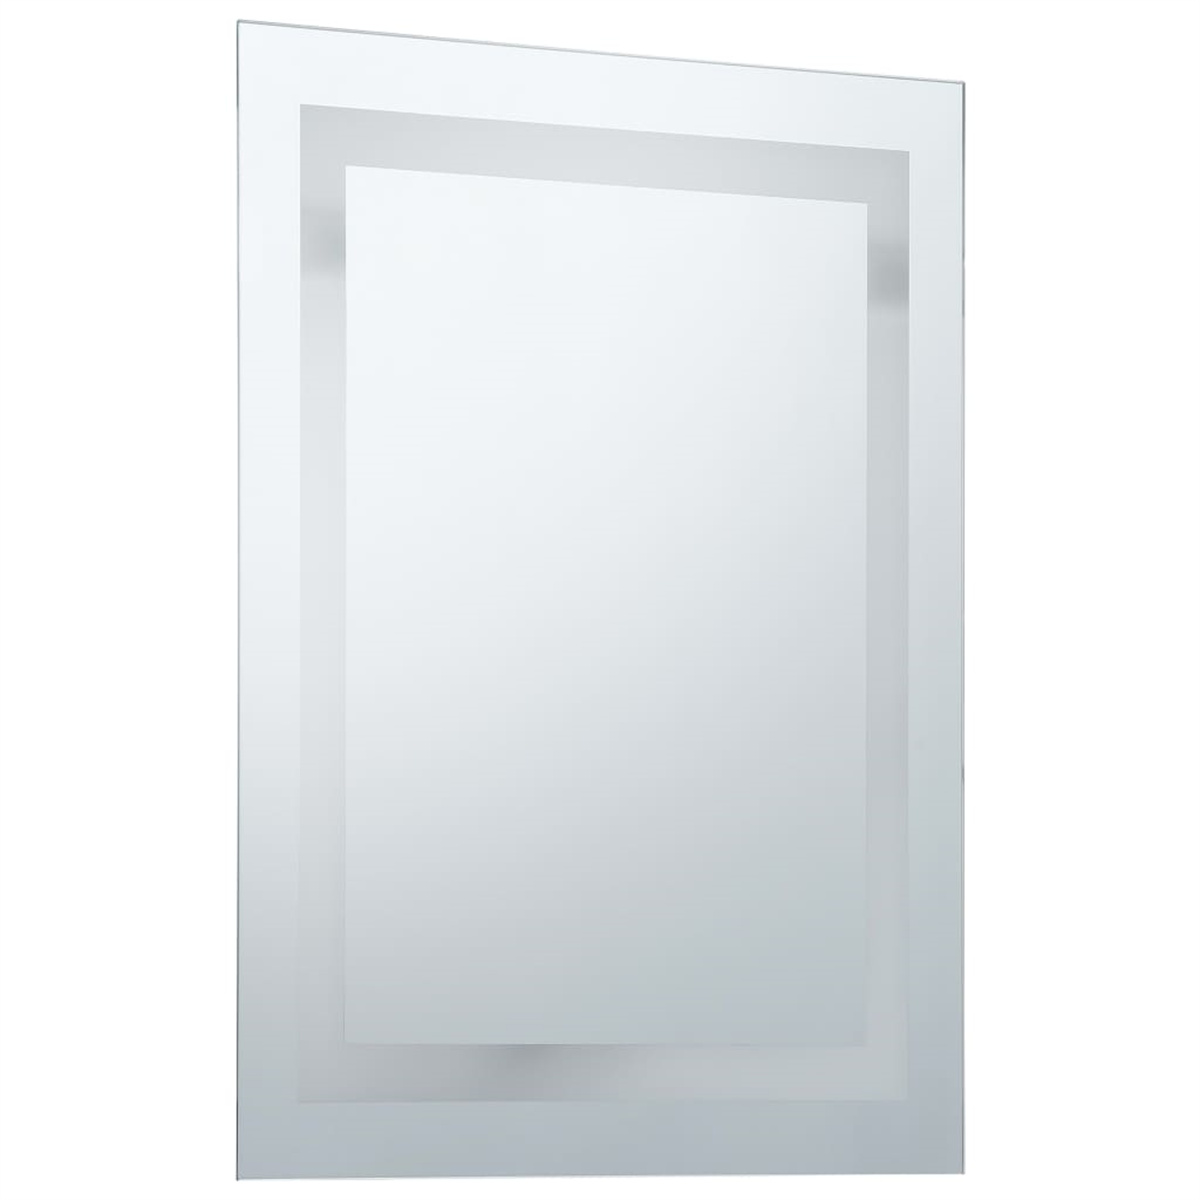 VIDAXL Badezimmerspiegel LED Wandspiegel mit Touch-Sensor und